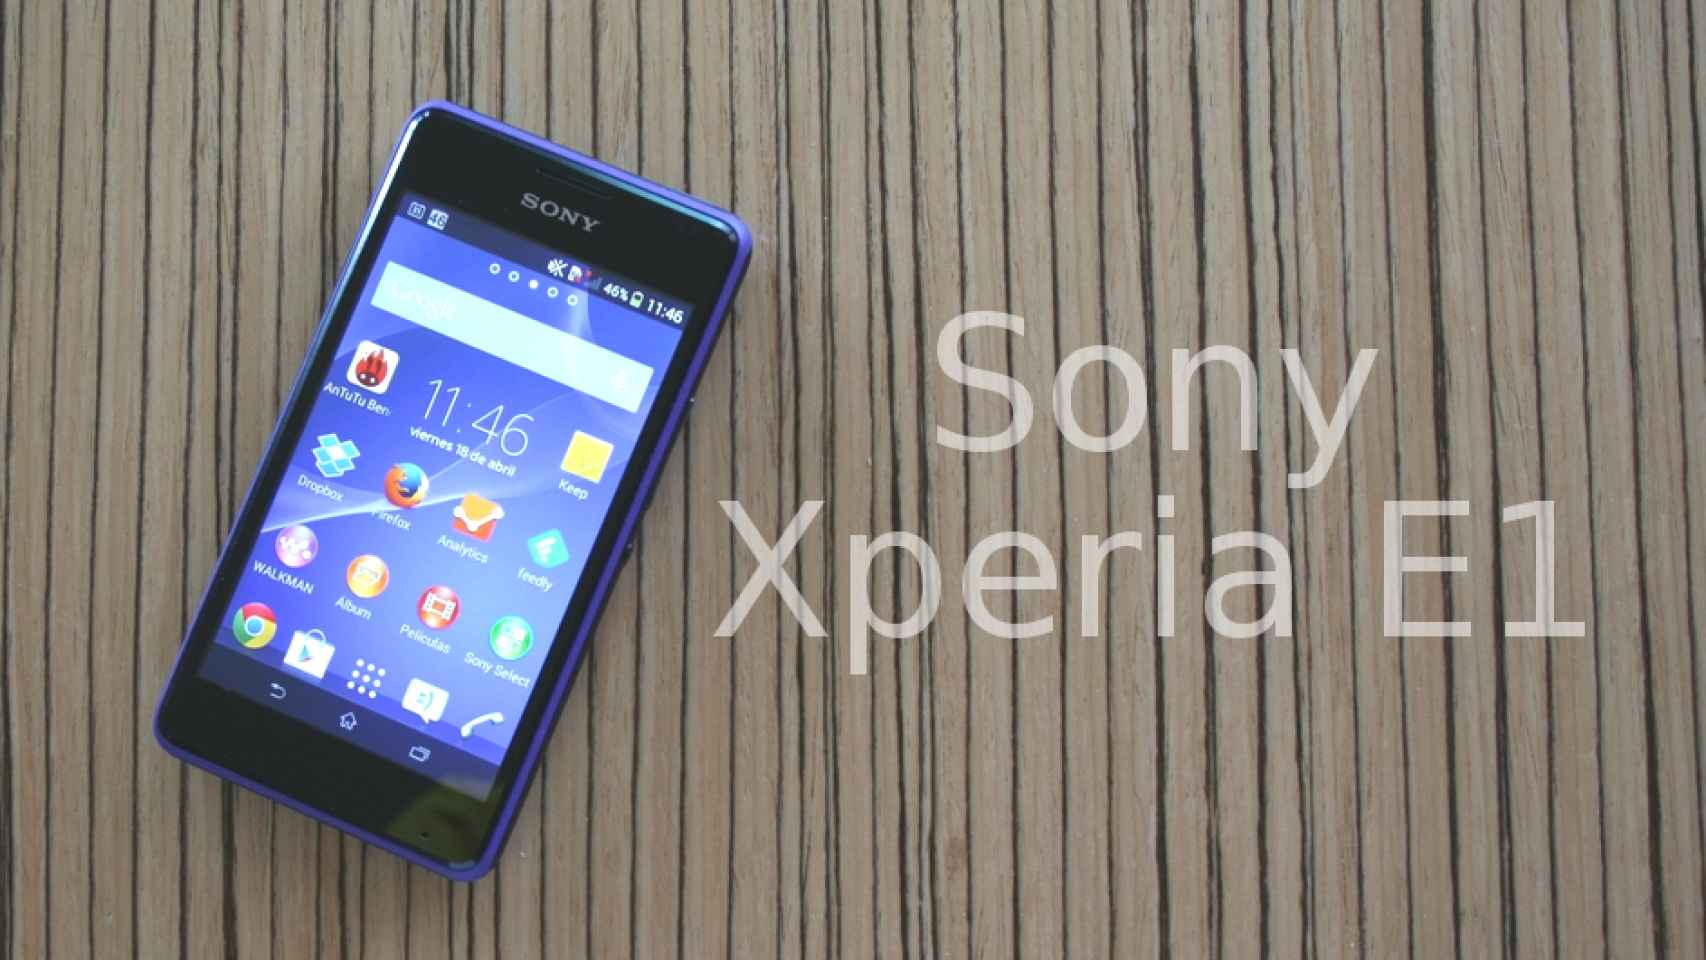 Sony Xperia E1: Análisis y experiencia de uso